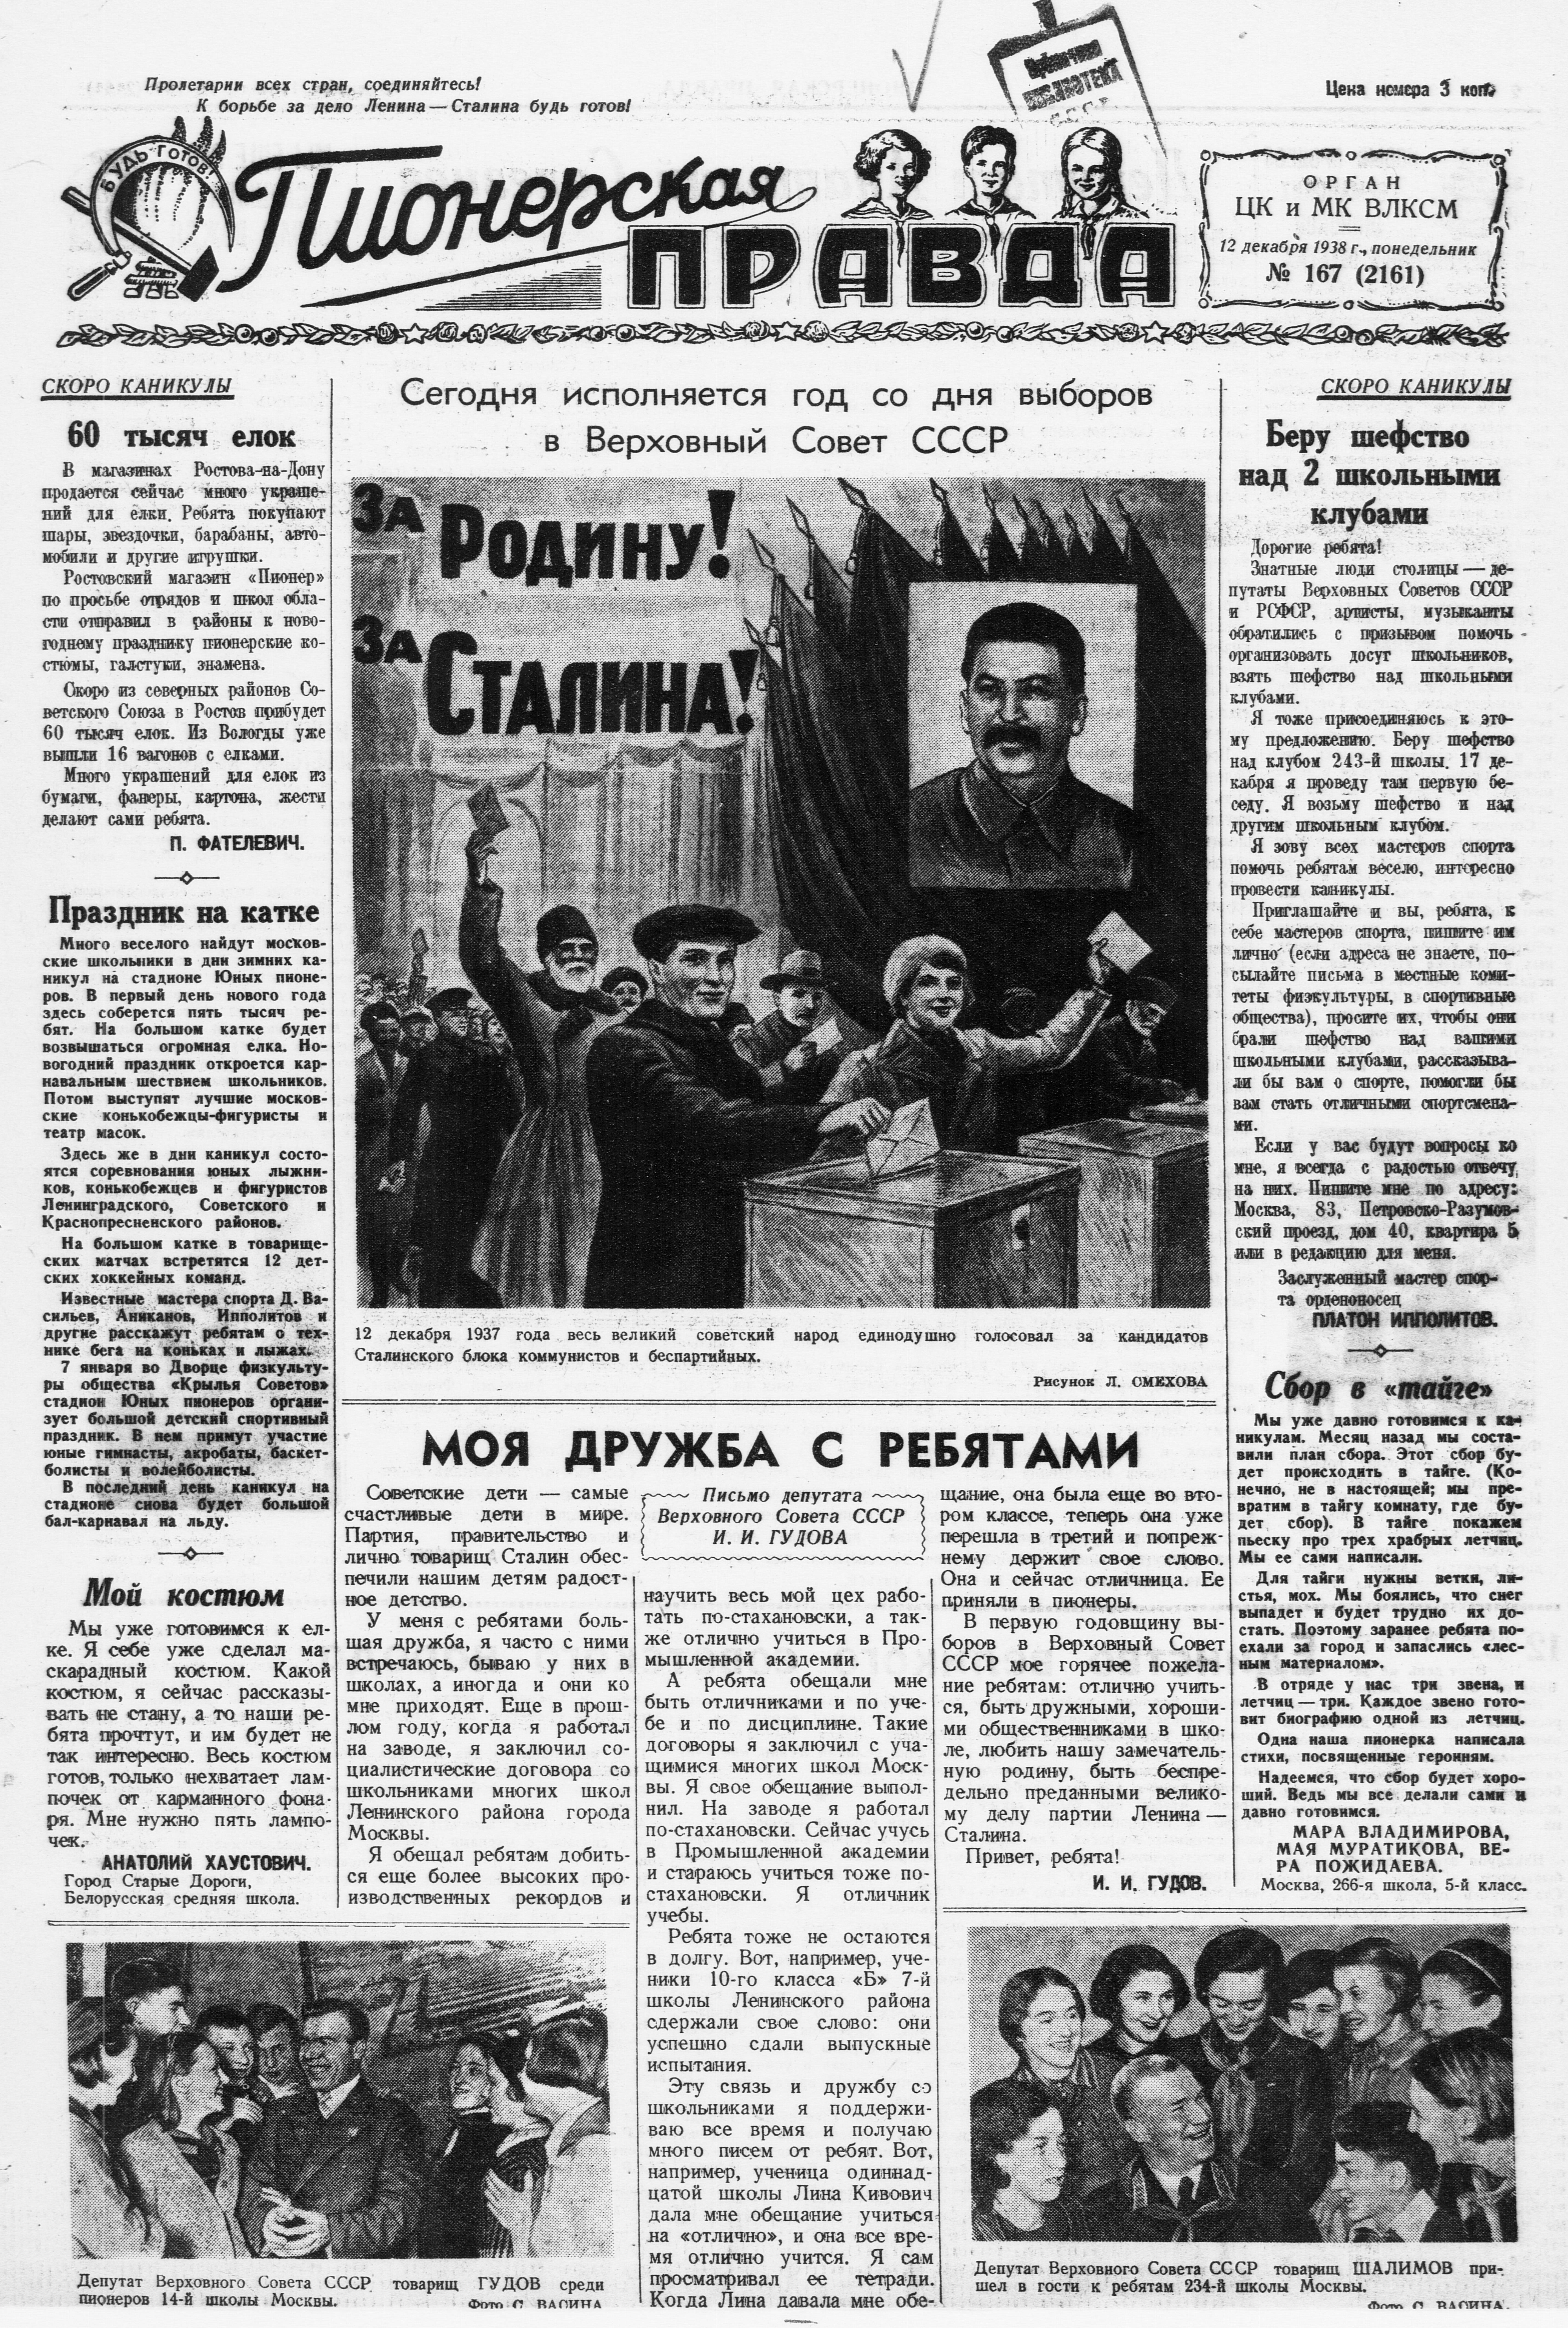 Пионерская правда. 1938. № 167 (2161): Орган ЦК и МК ВЛКСМ - 1938